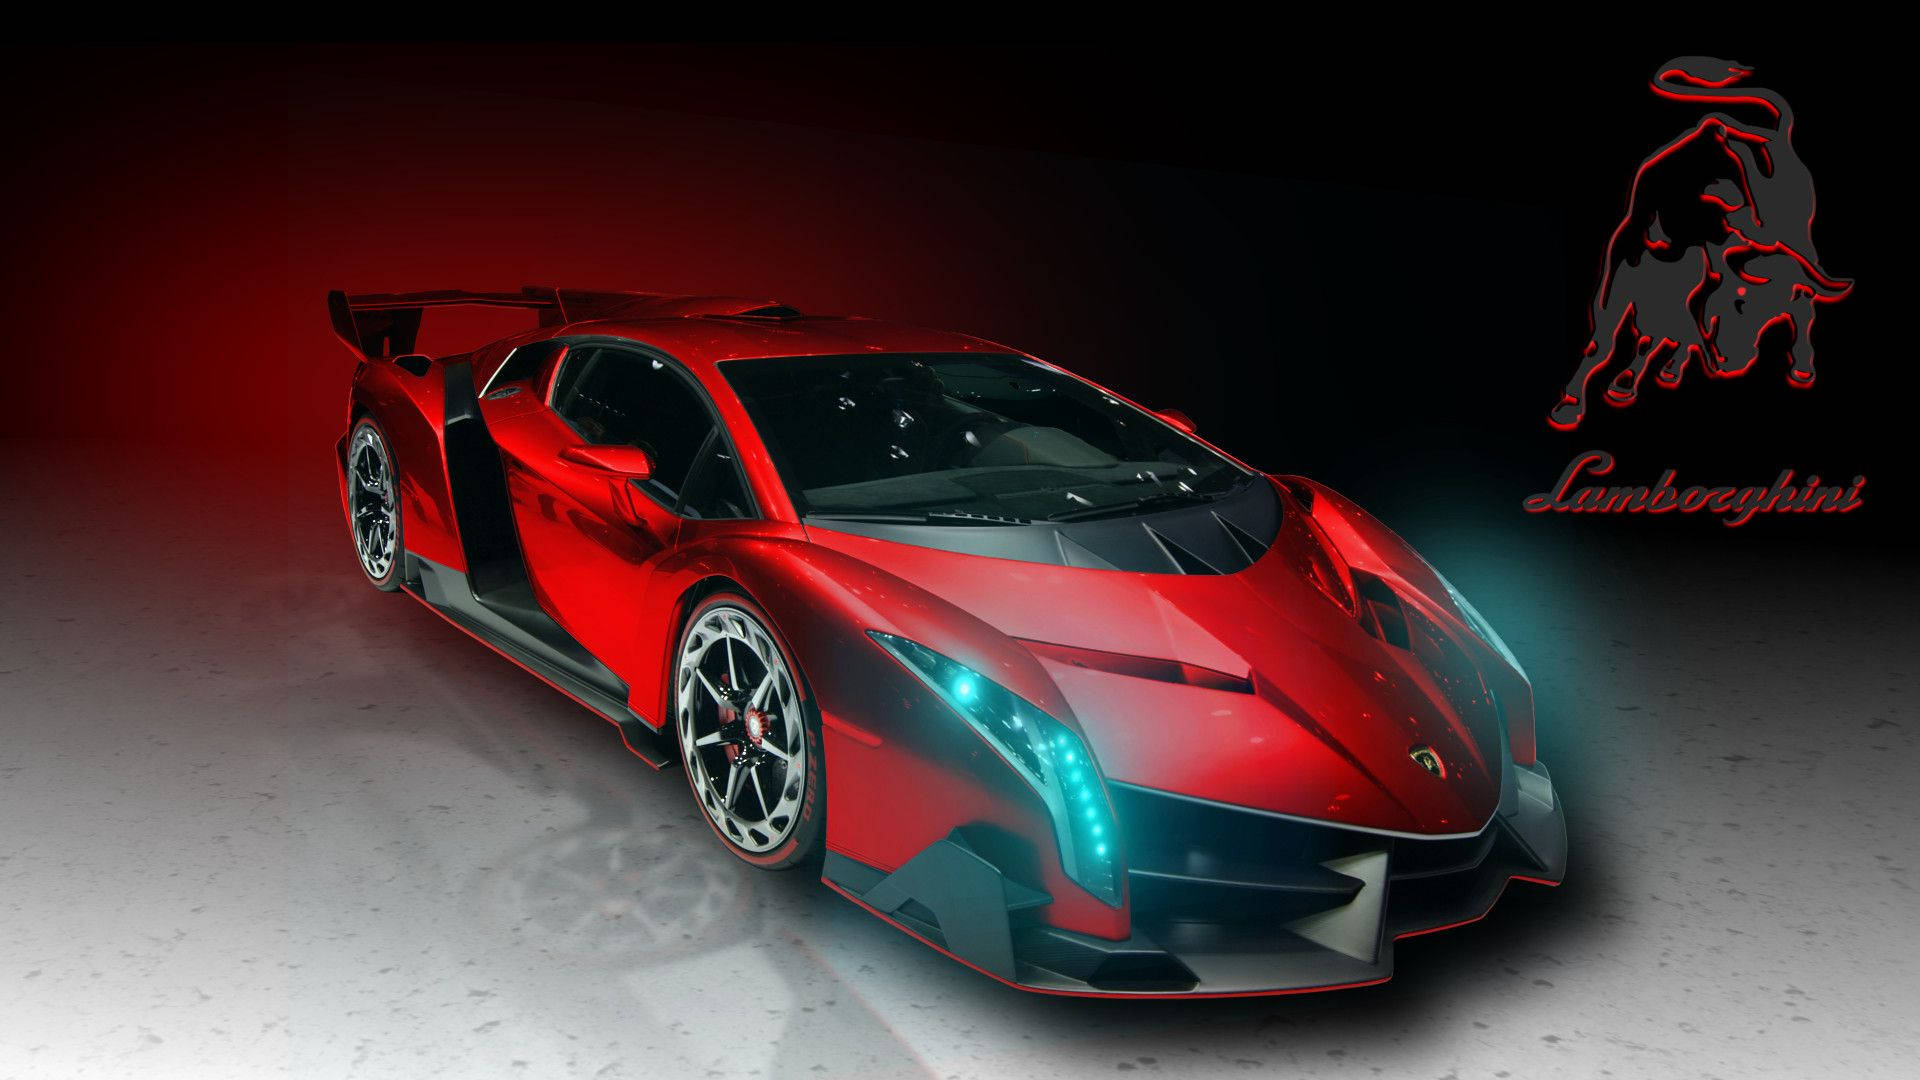 Cool Cars: Red Lamborghini Wallpaper